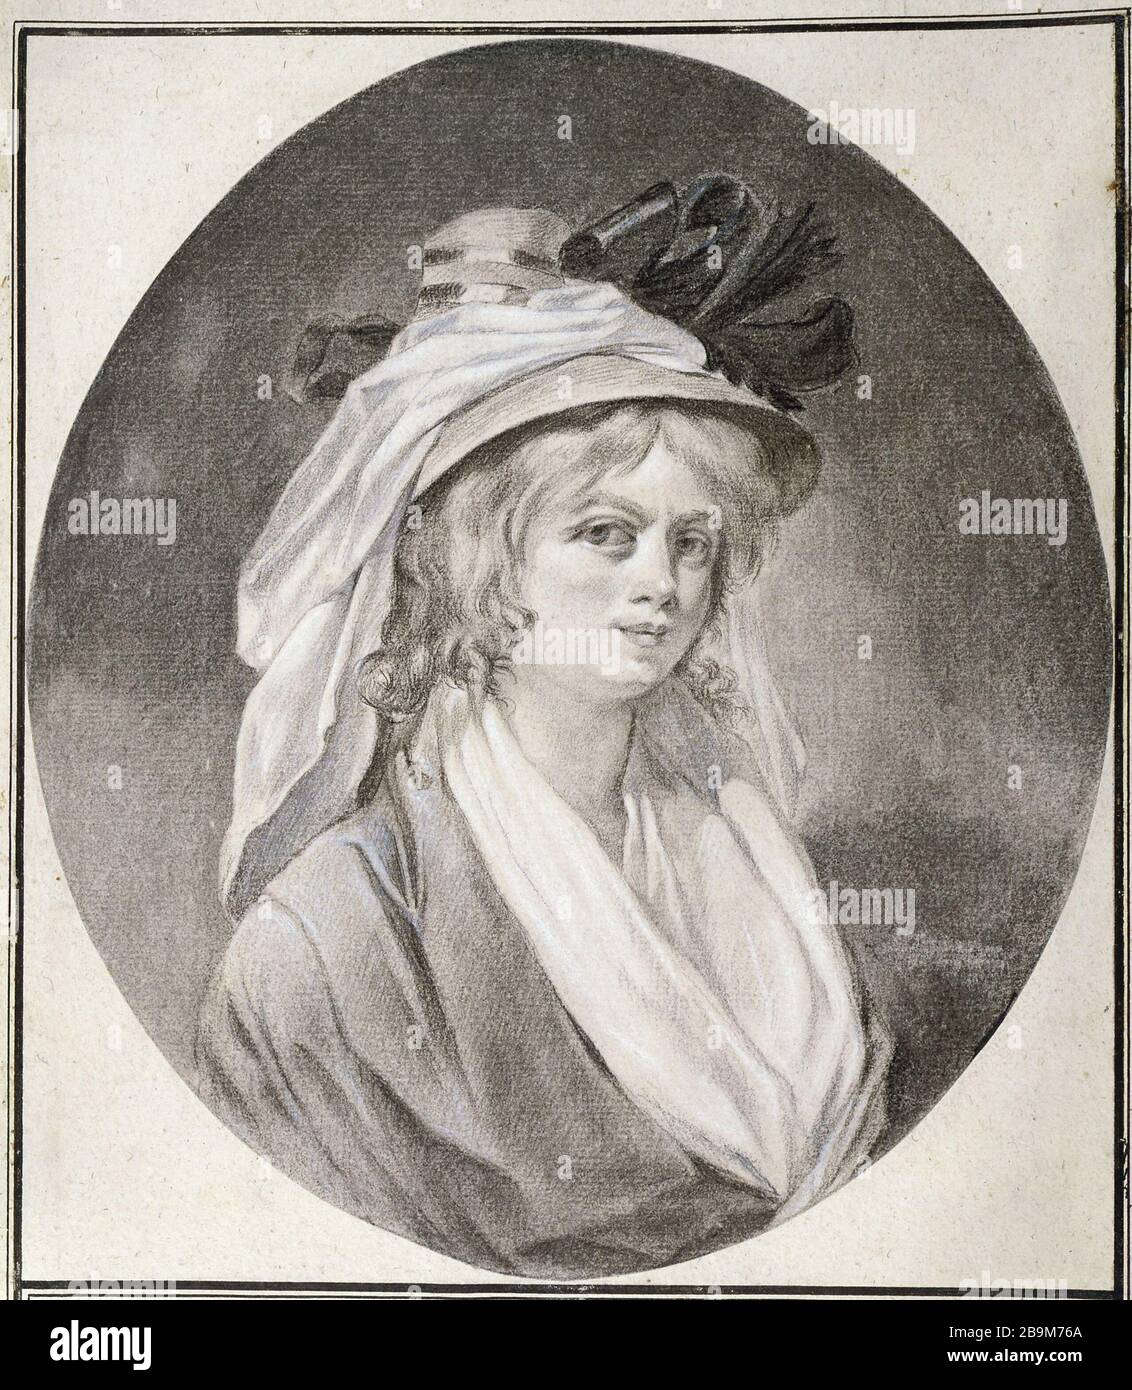 Charles Etienne Leguay. 'Portrait d'une jeune femme au chapeau à voile blanc et coques de ruban noir'. Paris, musée Cognacq-Jay. Stock Photo